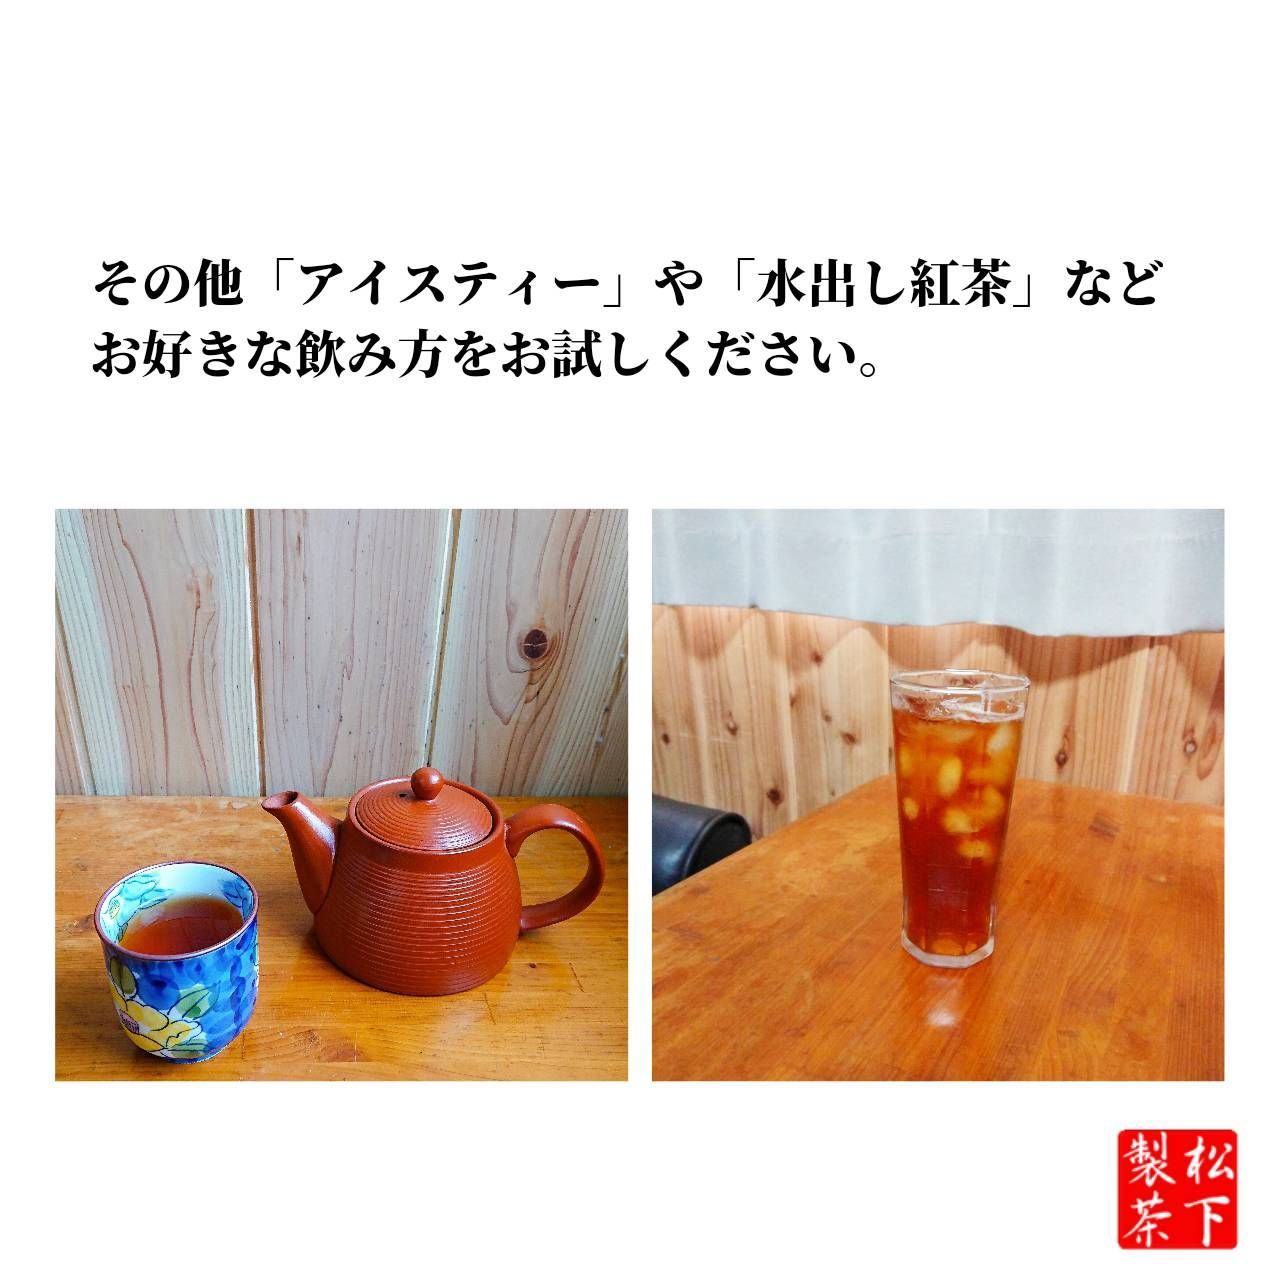 種子島の和紅茶ティーバッグ 飲み比べセット 15g(2.5g×6袋入り)×6本-7